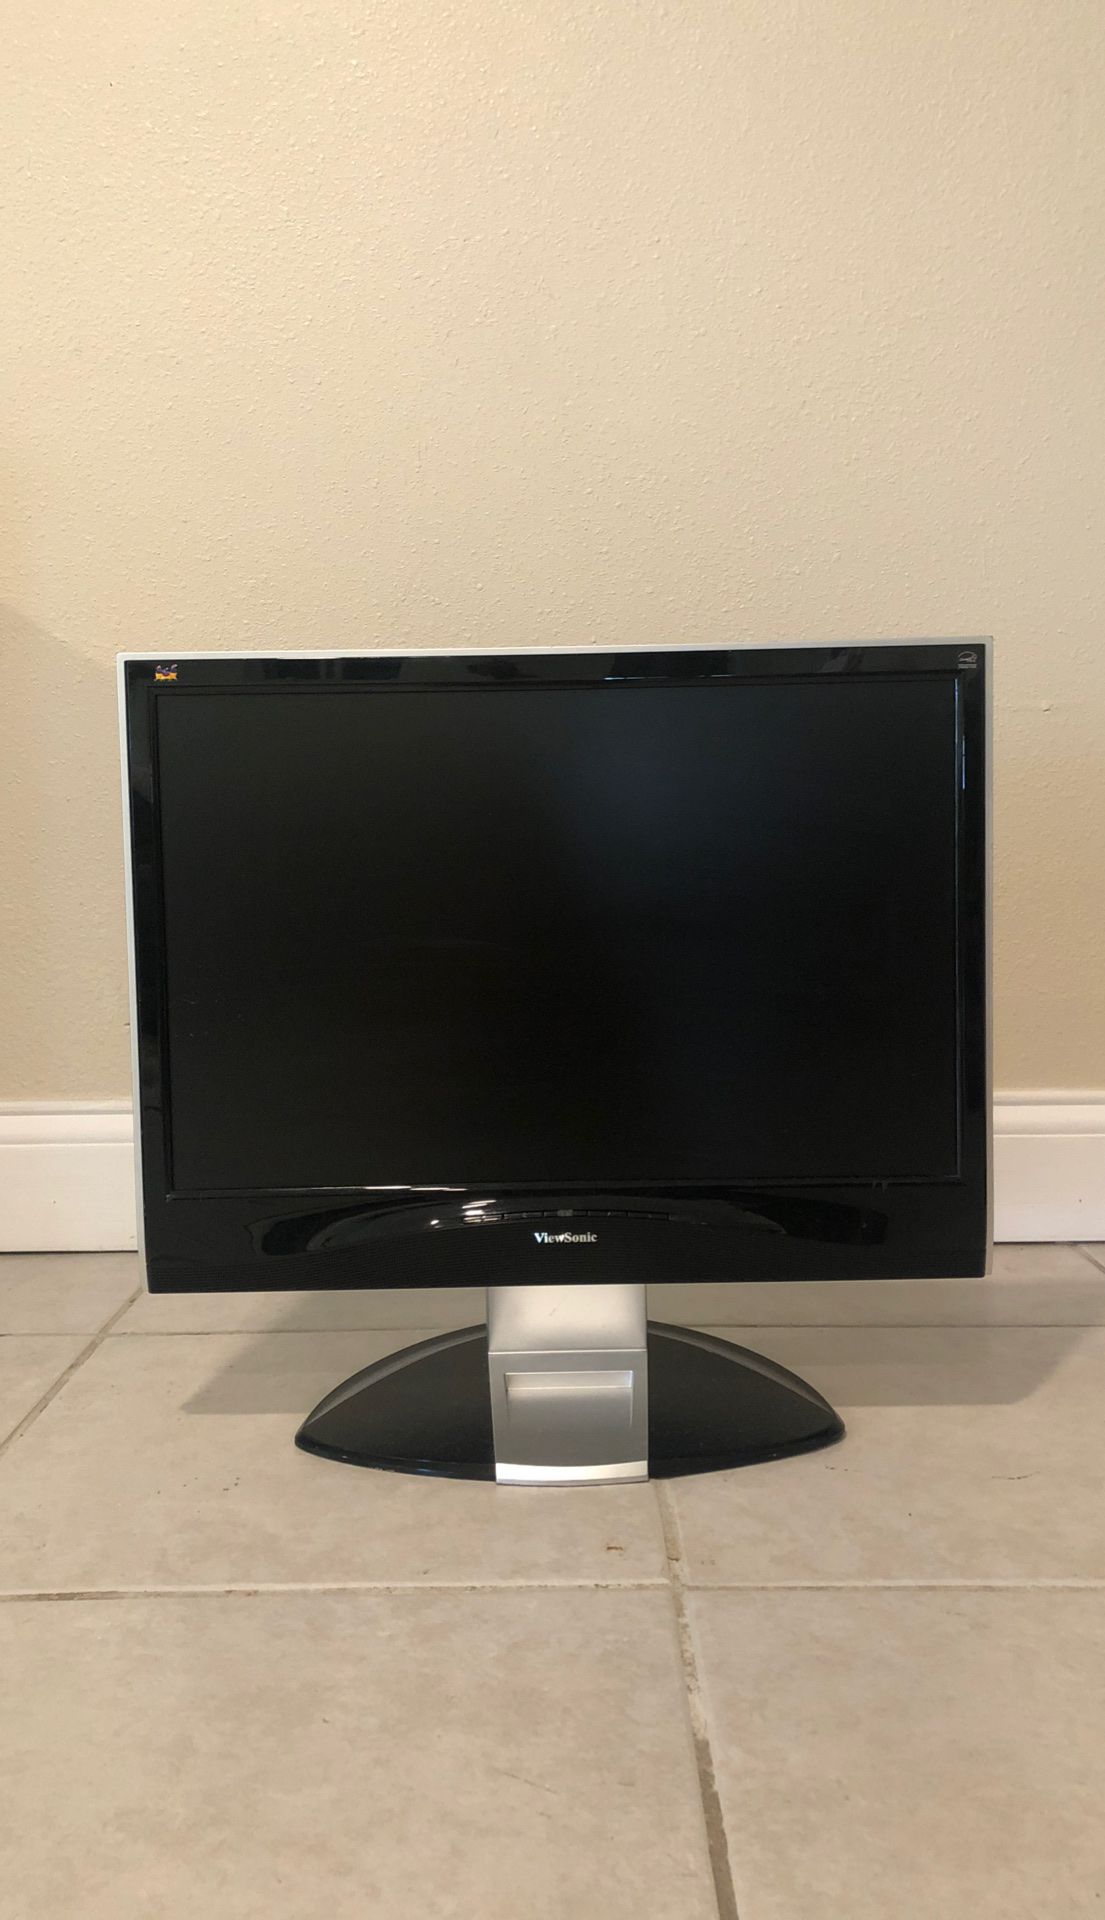 ViewSonic computer monitor